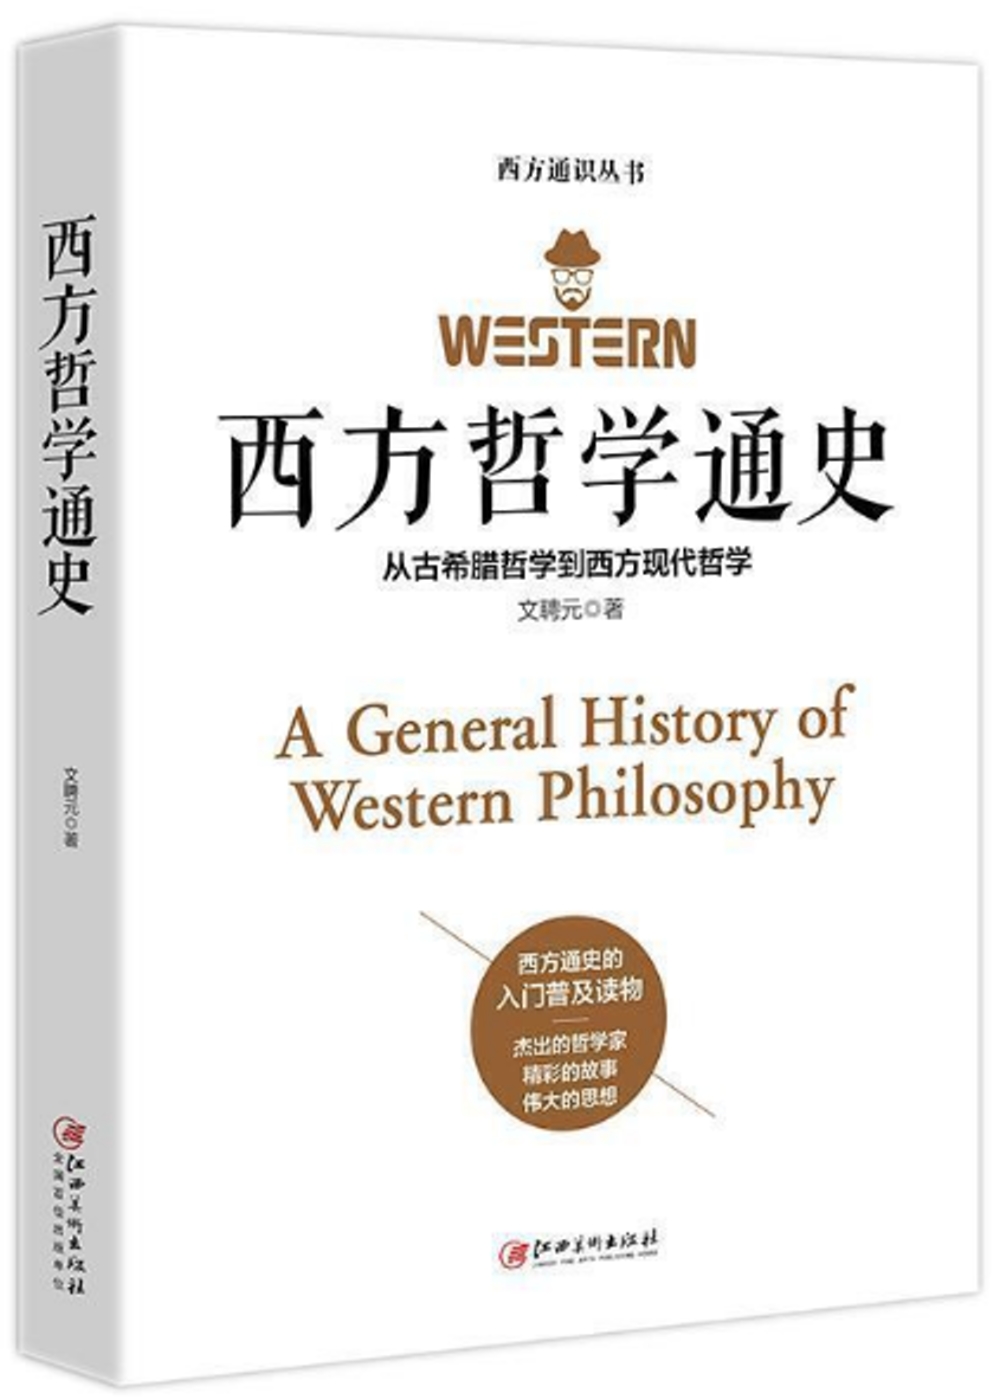 西方哲學通史:從古希臘哲學到西方現代哲學